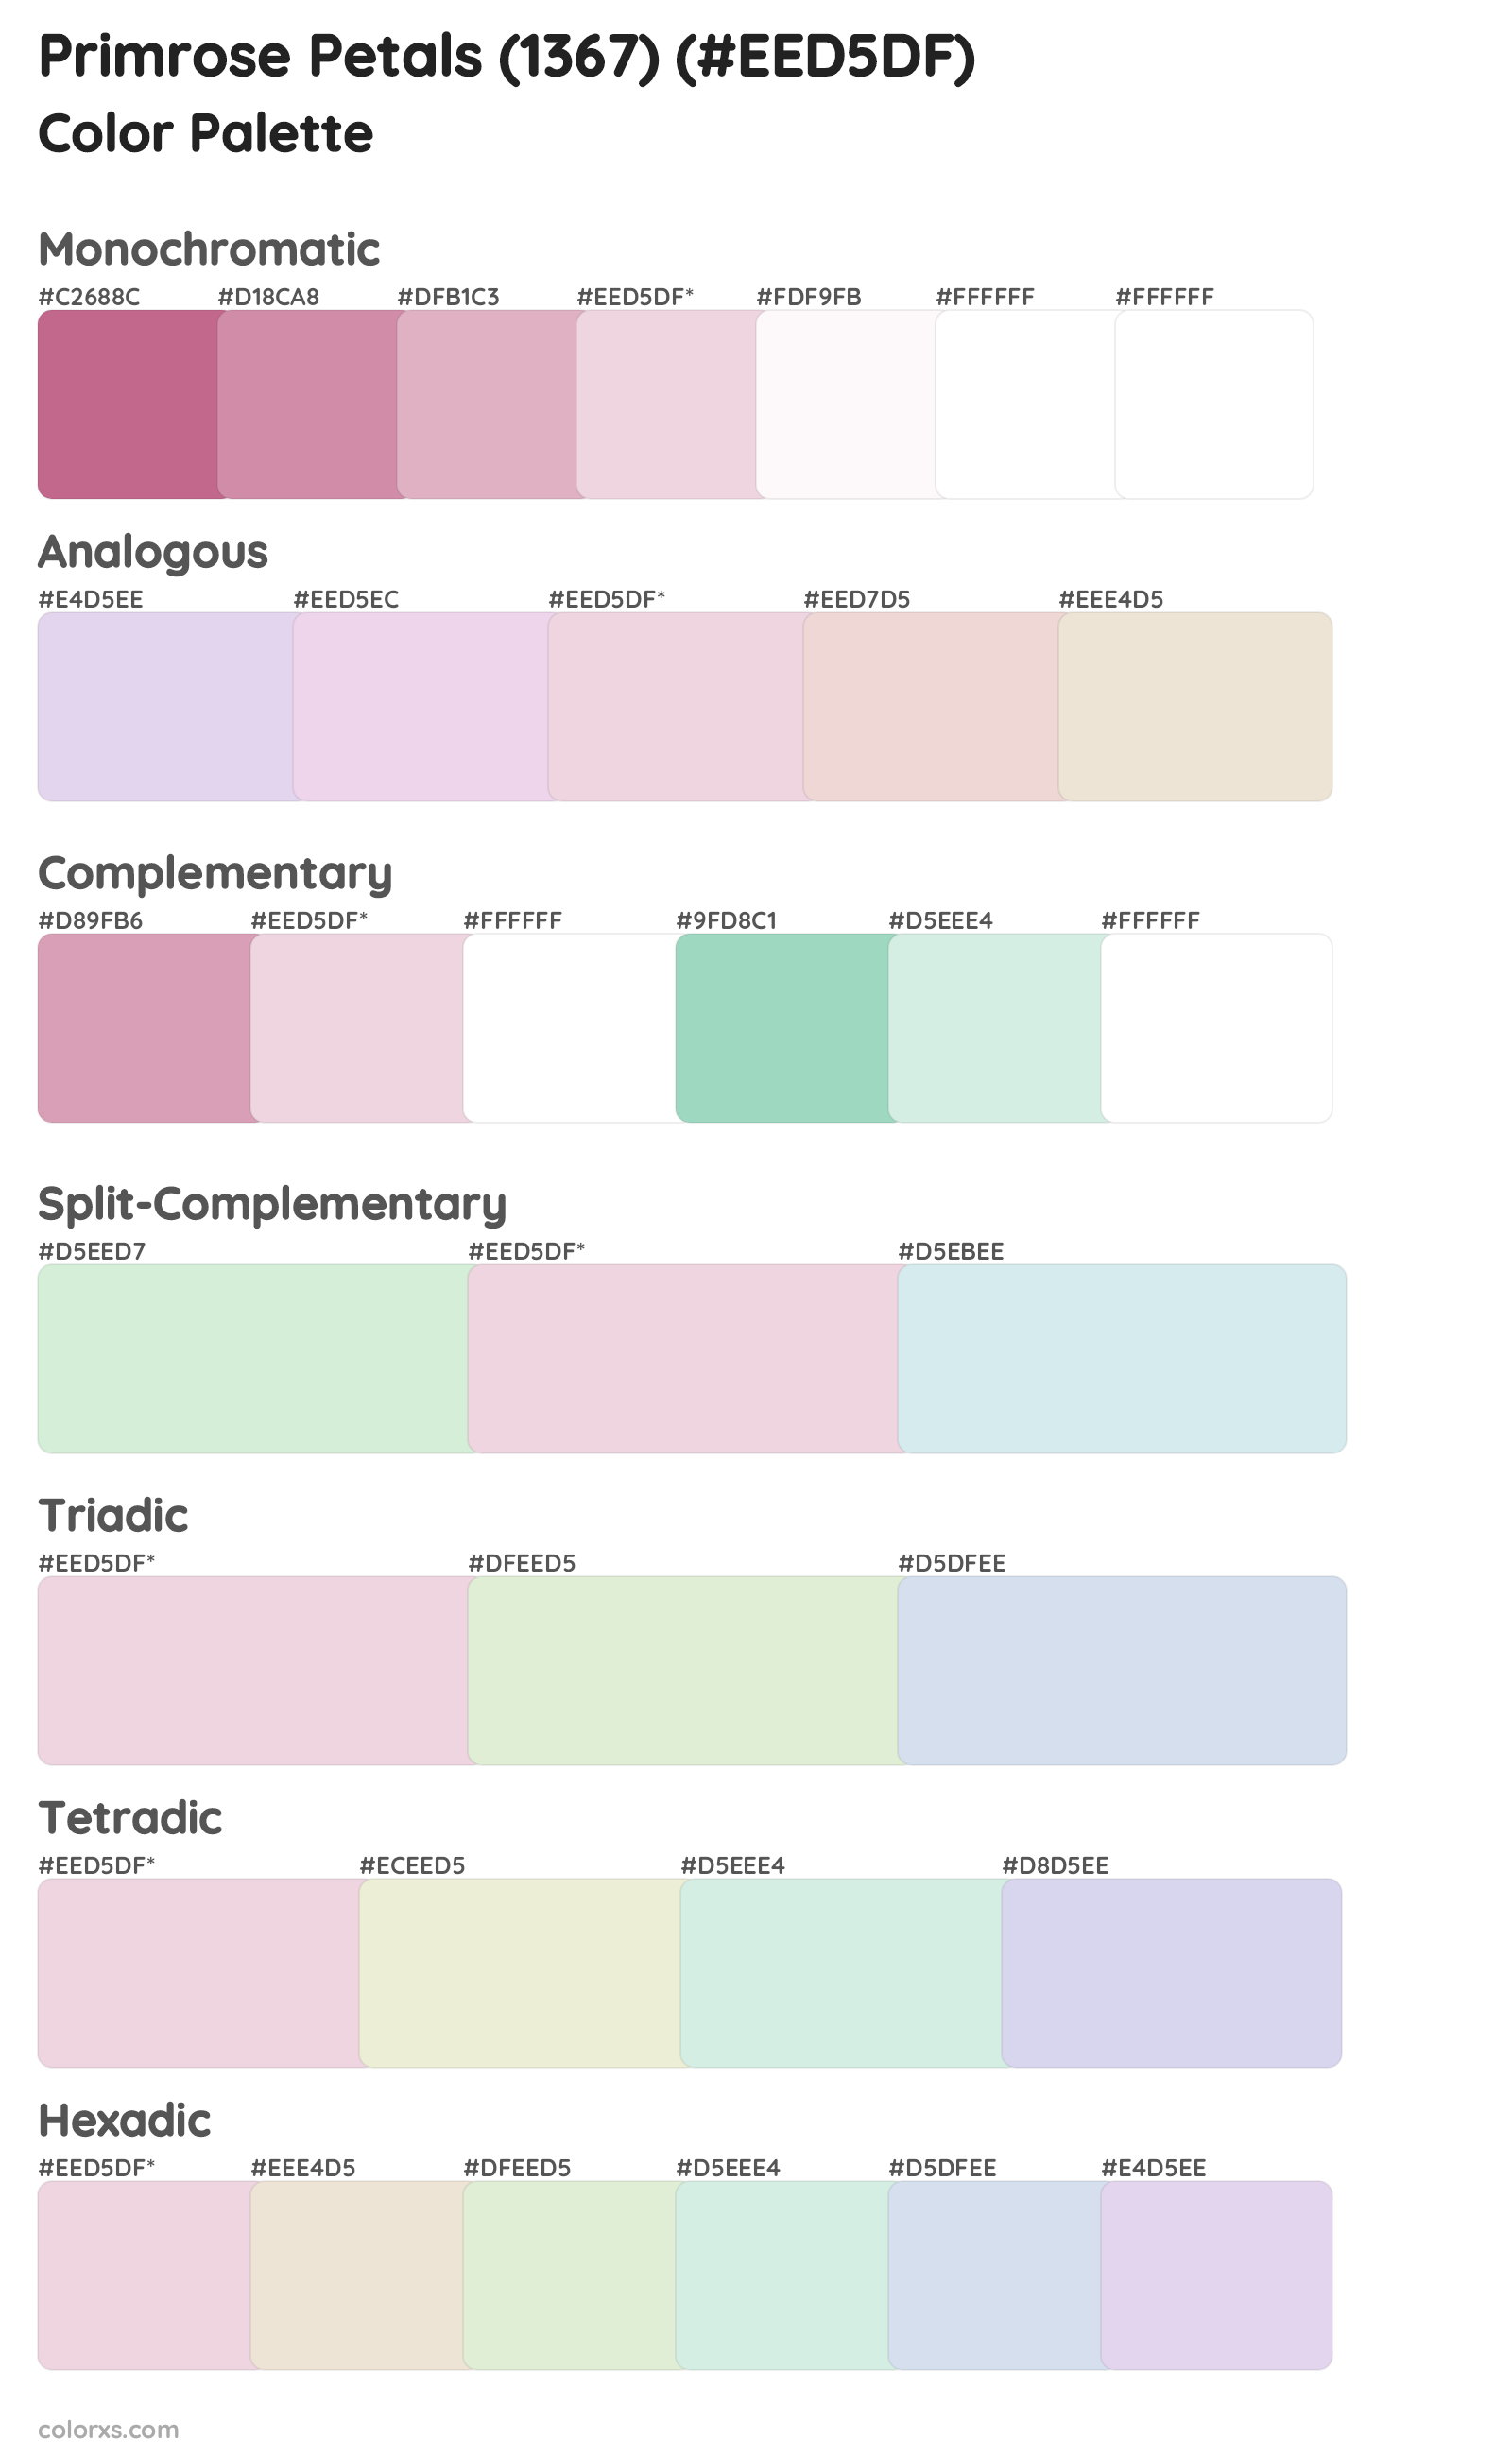 Primrose Petals (1367) Color Scheme Palettes